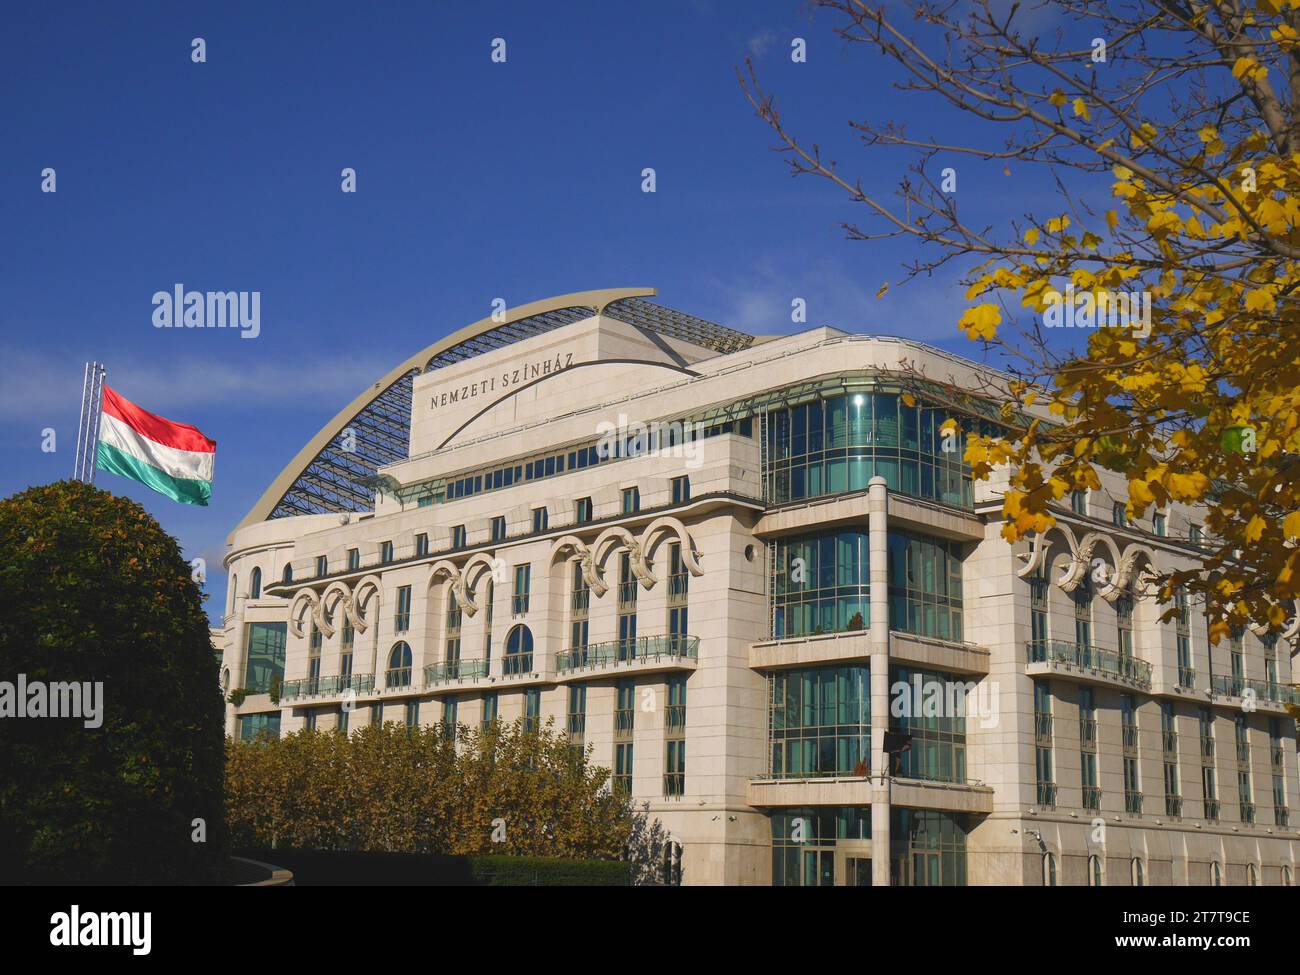 Nemzeti Szinhaz, das Nationaltheater, im Herbst, mit der ungarischen Flagge weht im Wind, Ferencvaros, Budapest, Ungarn Stockfoto